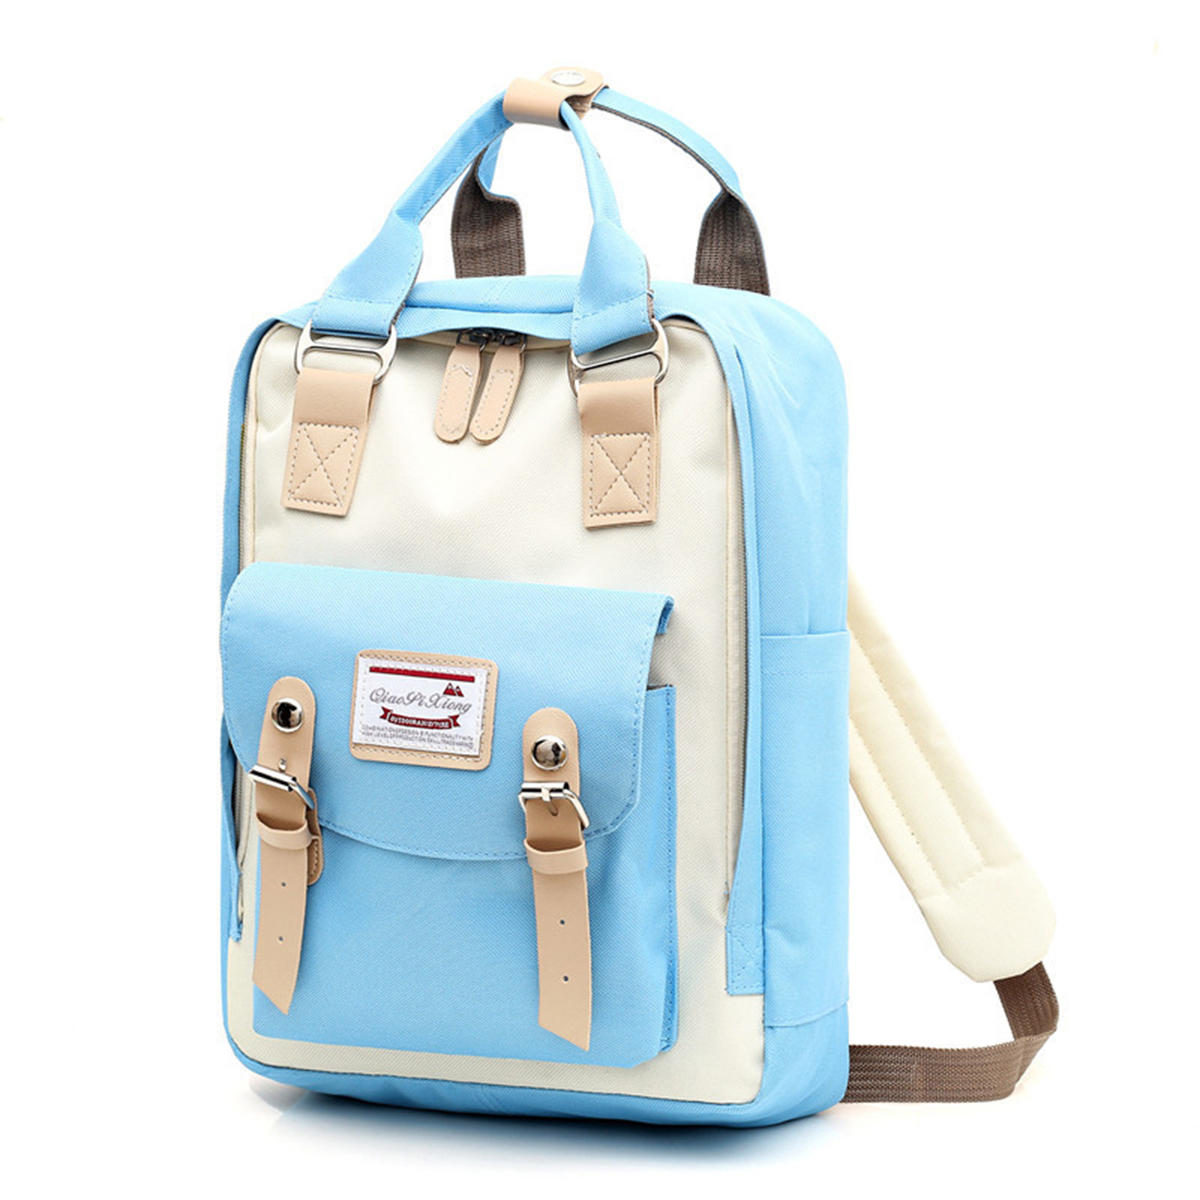 Рюкзак с USB-портом для учеников, водонепроницаемый плечевой мешок для походов и путешествий.